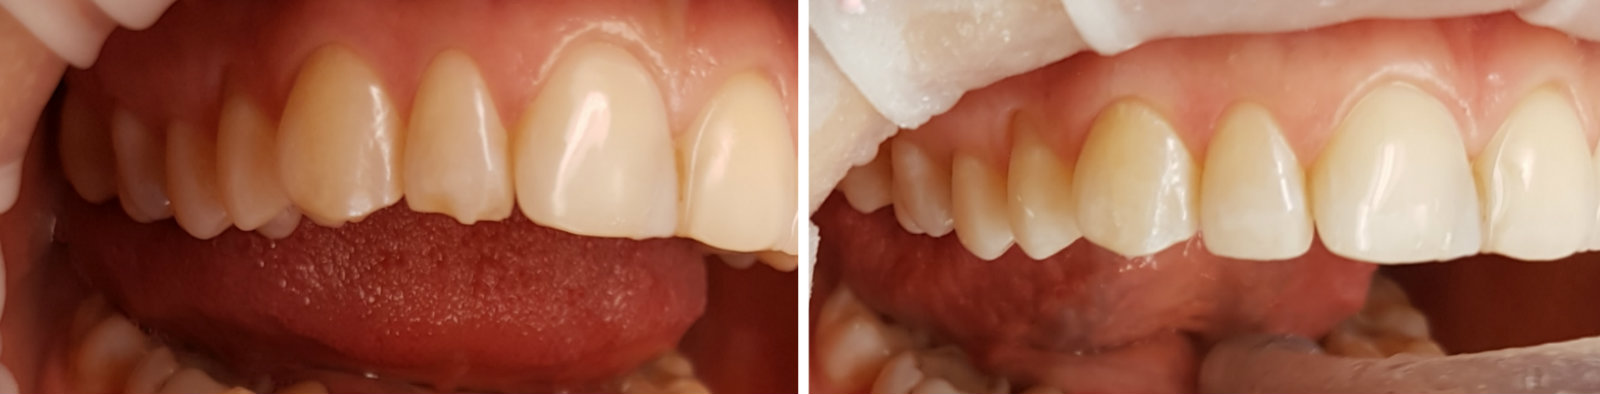 Восстановление скола зуба